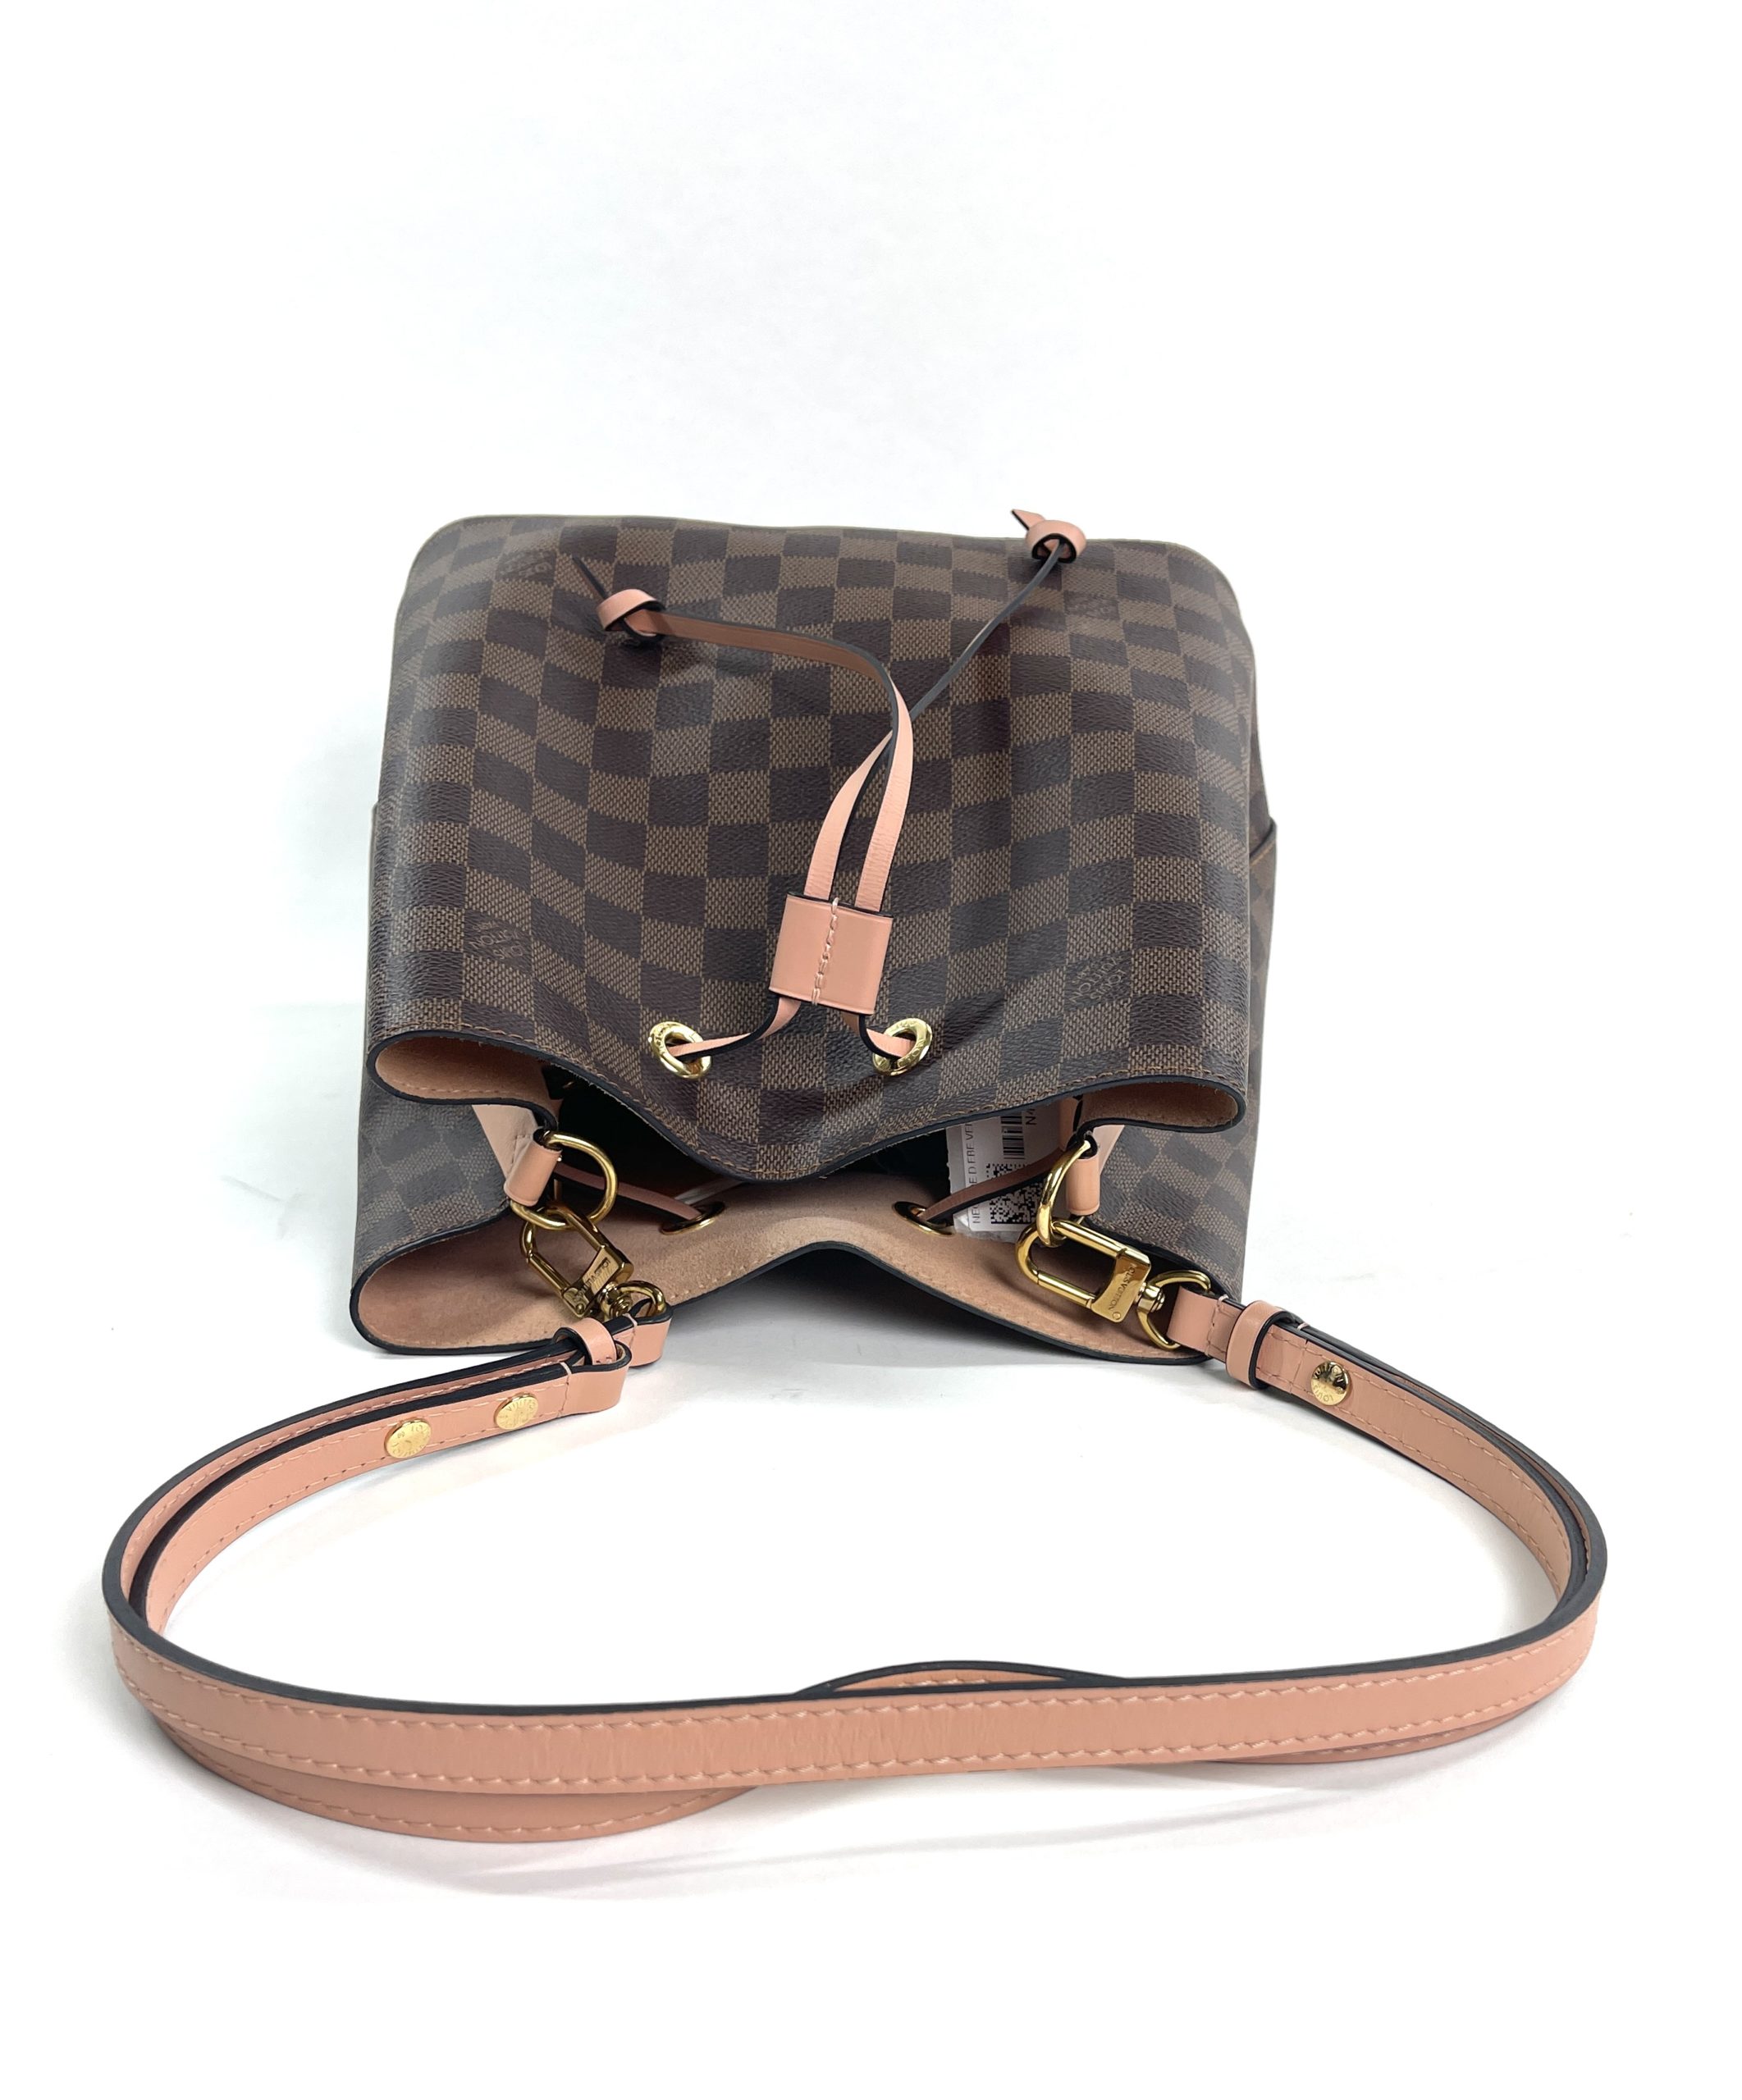 Authentic Louis Vuitton Damier Ebene NeoNoe MM Shoulder Bag